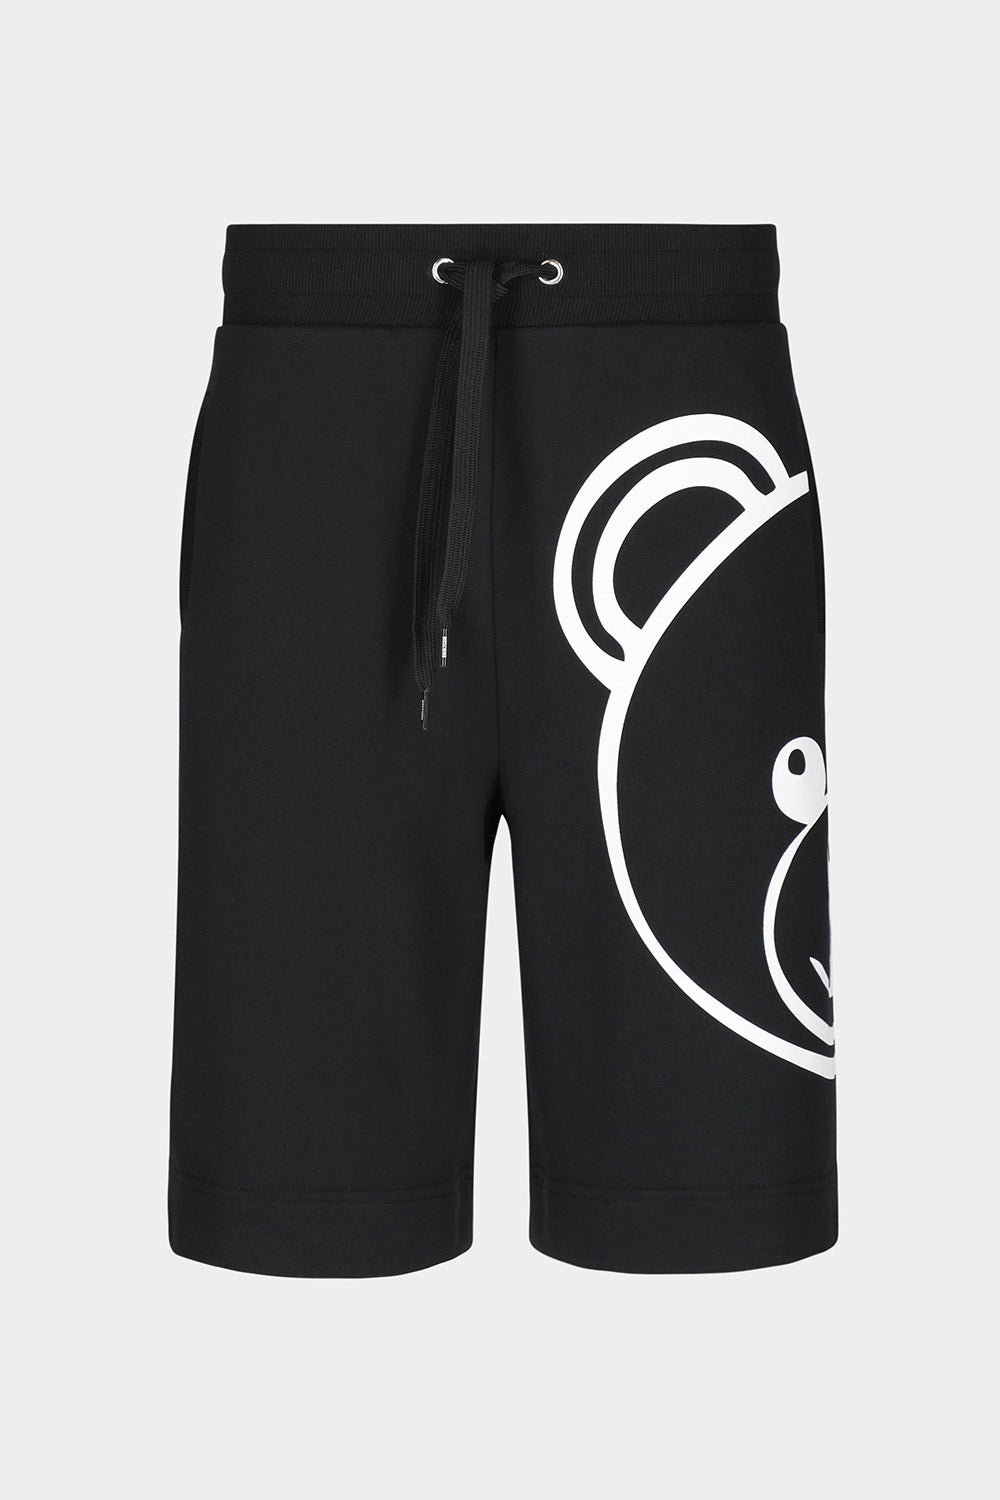 מכנסי ברמודה לגברים דובי ענק MOSCHINO Vendome online | ונדום .